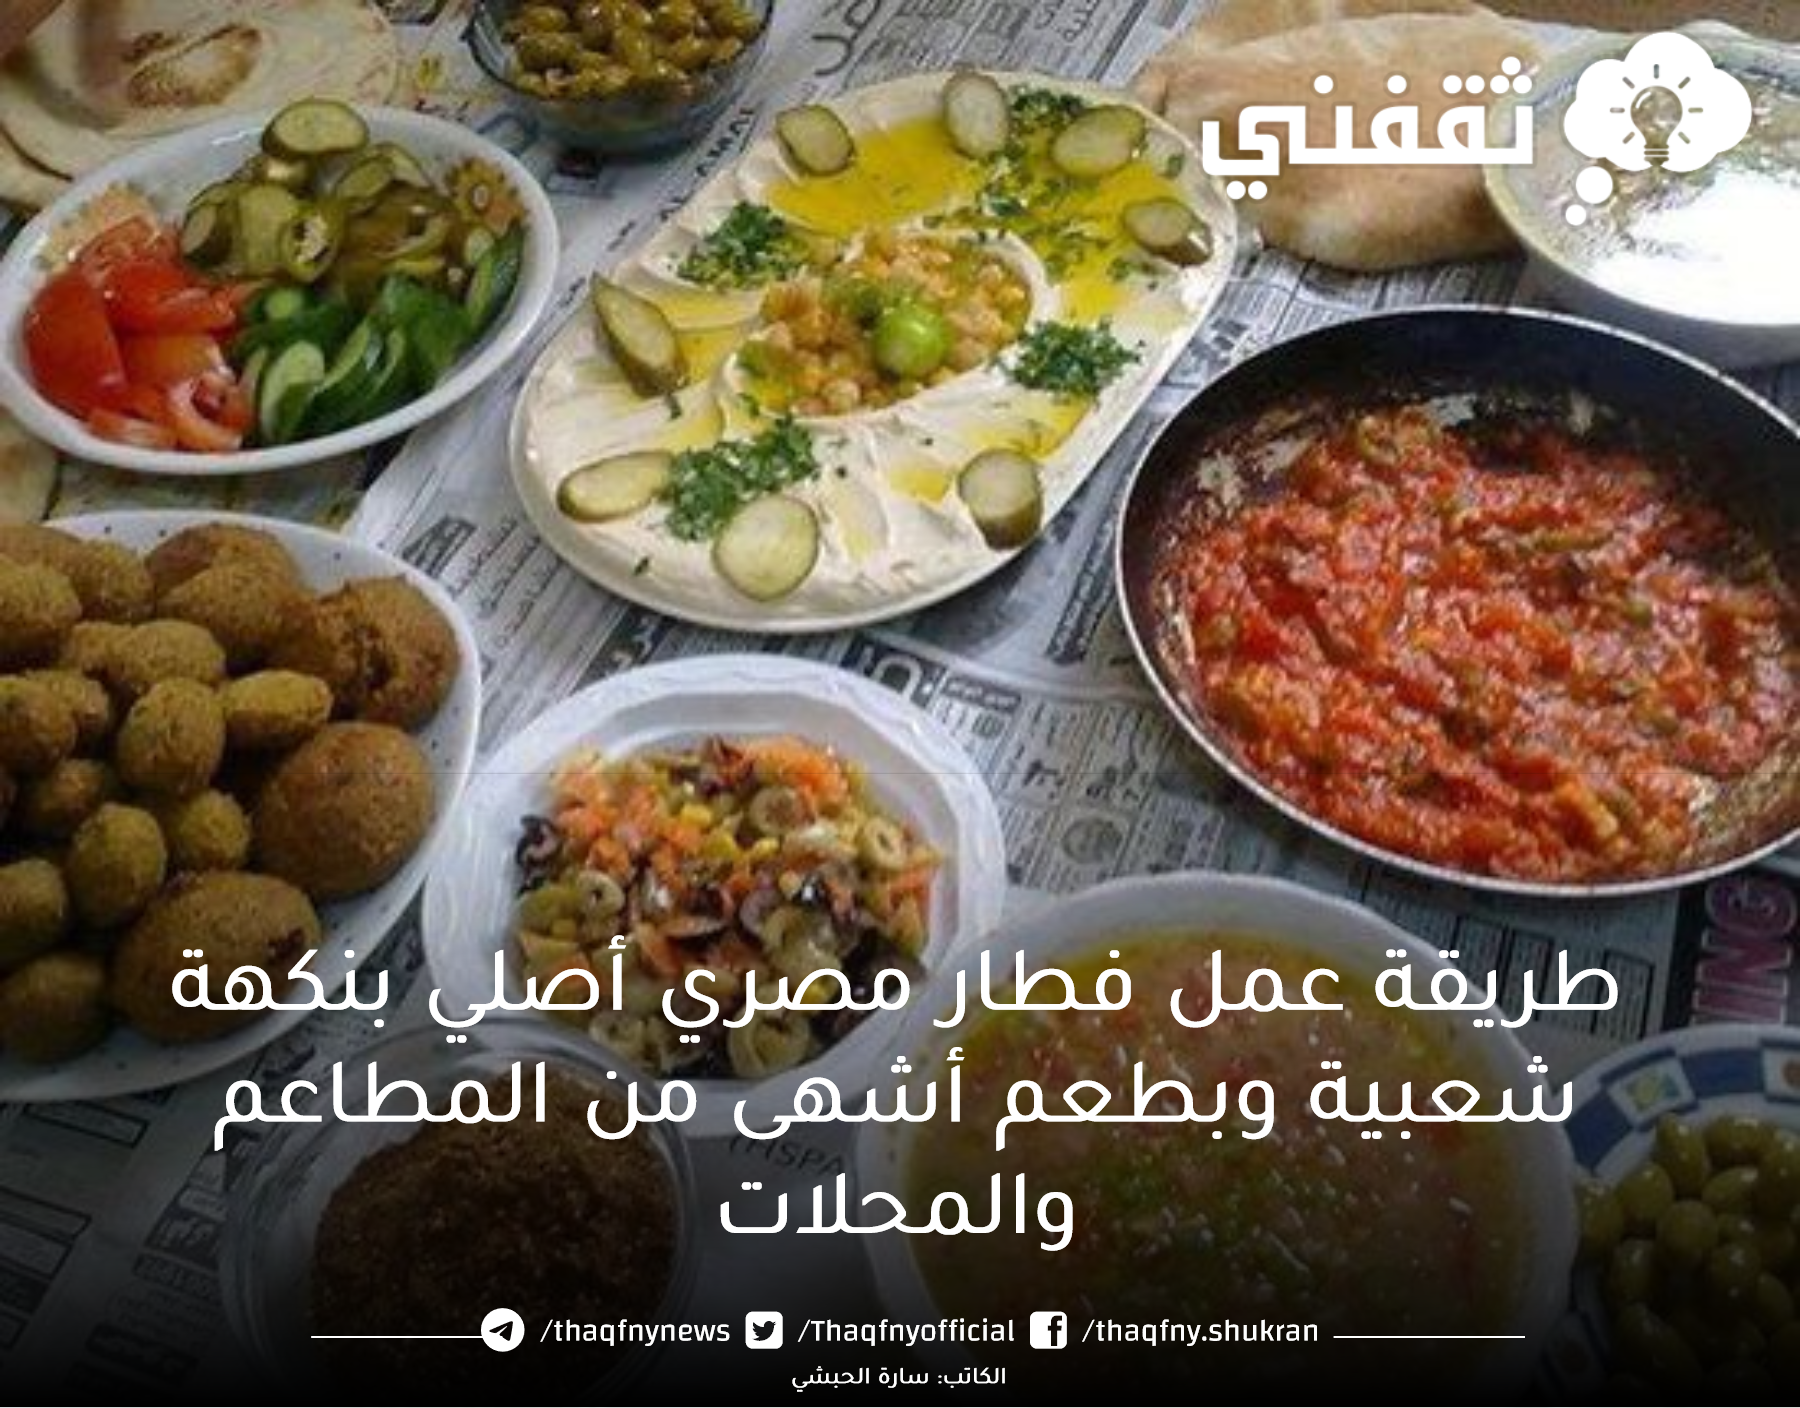 طريقة عمل فطار مصري أصلي بنكهة شعبية وبطعم أشهى من المطاعم والمحلات